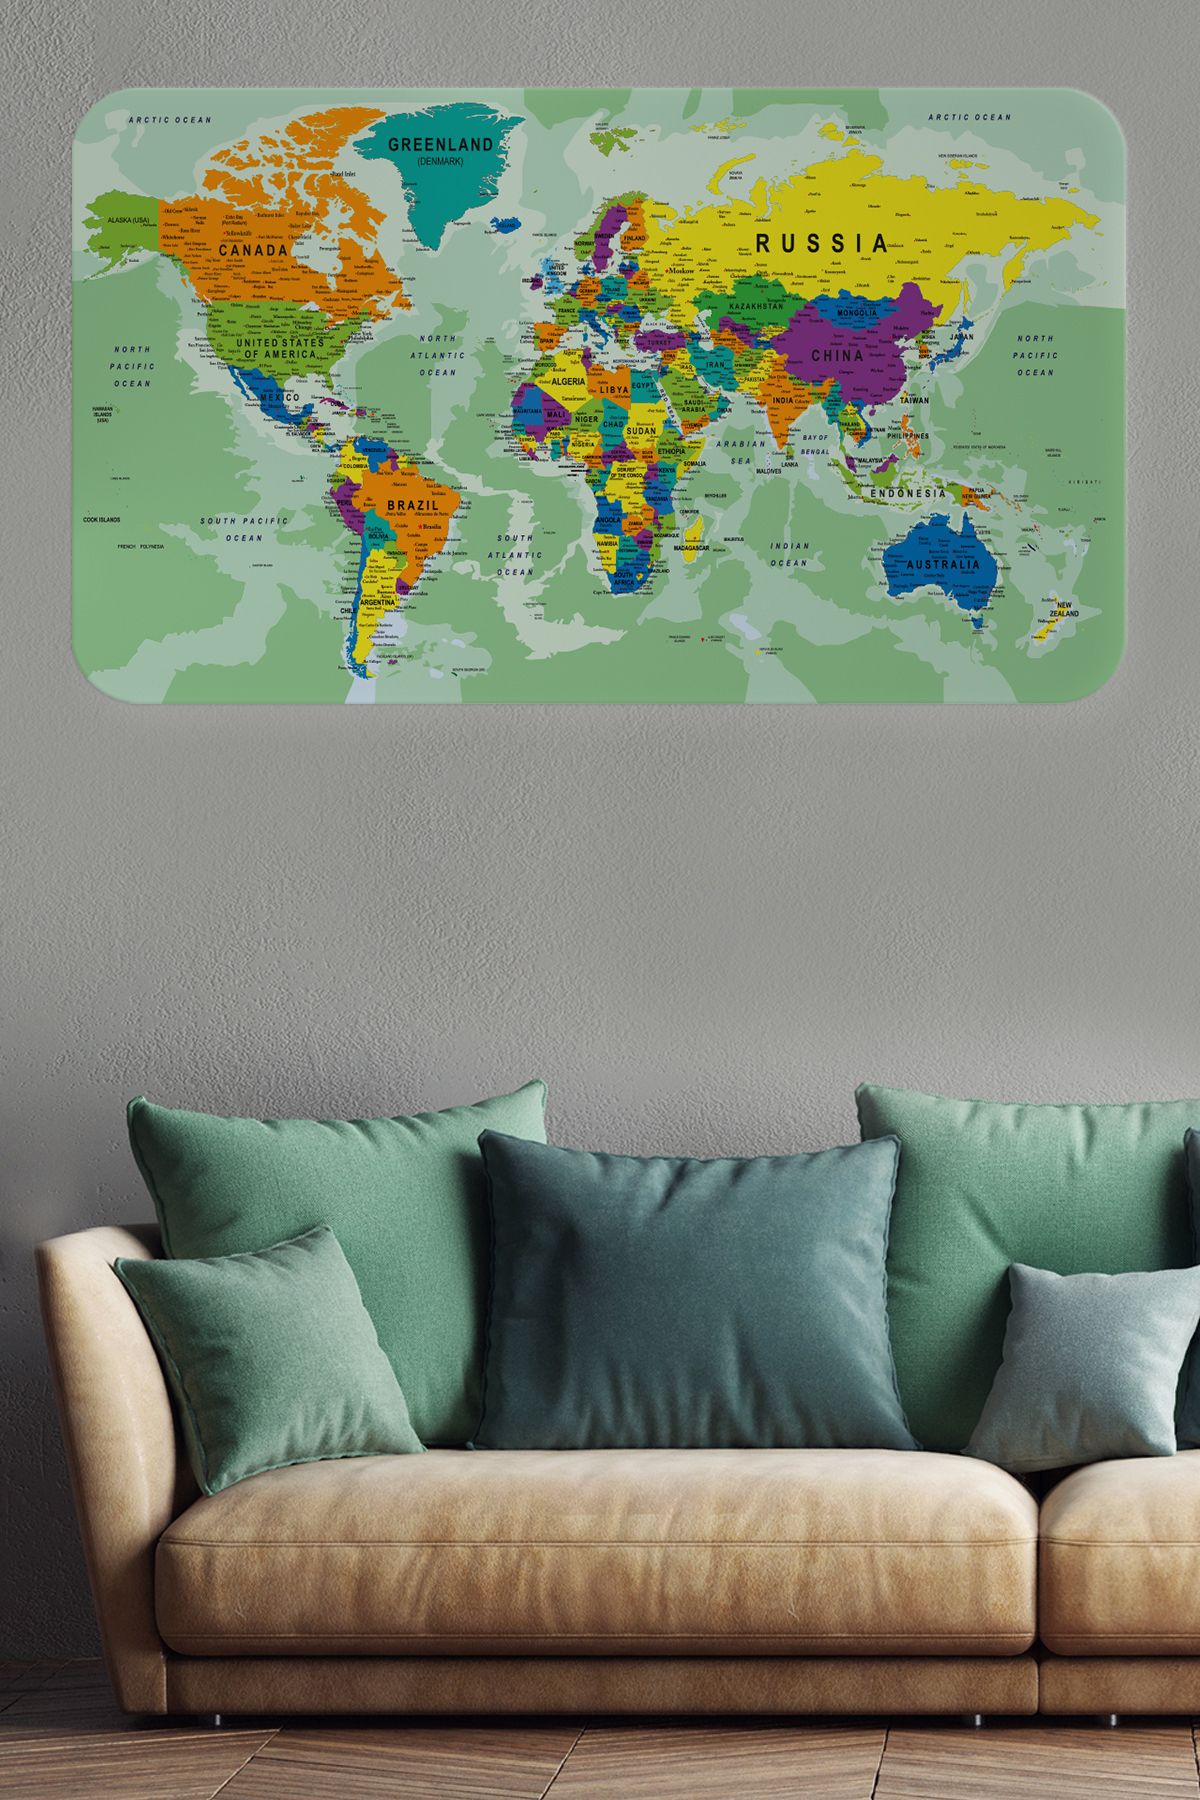 Harita Sepeti Eğitici Ülke ve Başkent Okyanus Detaylı Atlası Dünya Haritası Duvar Sticker-3835